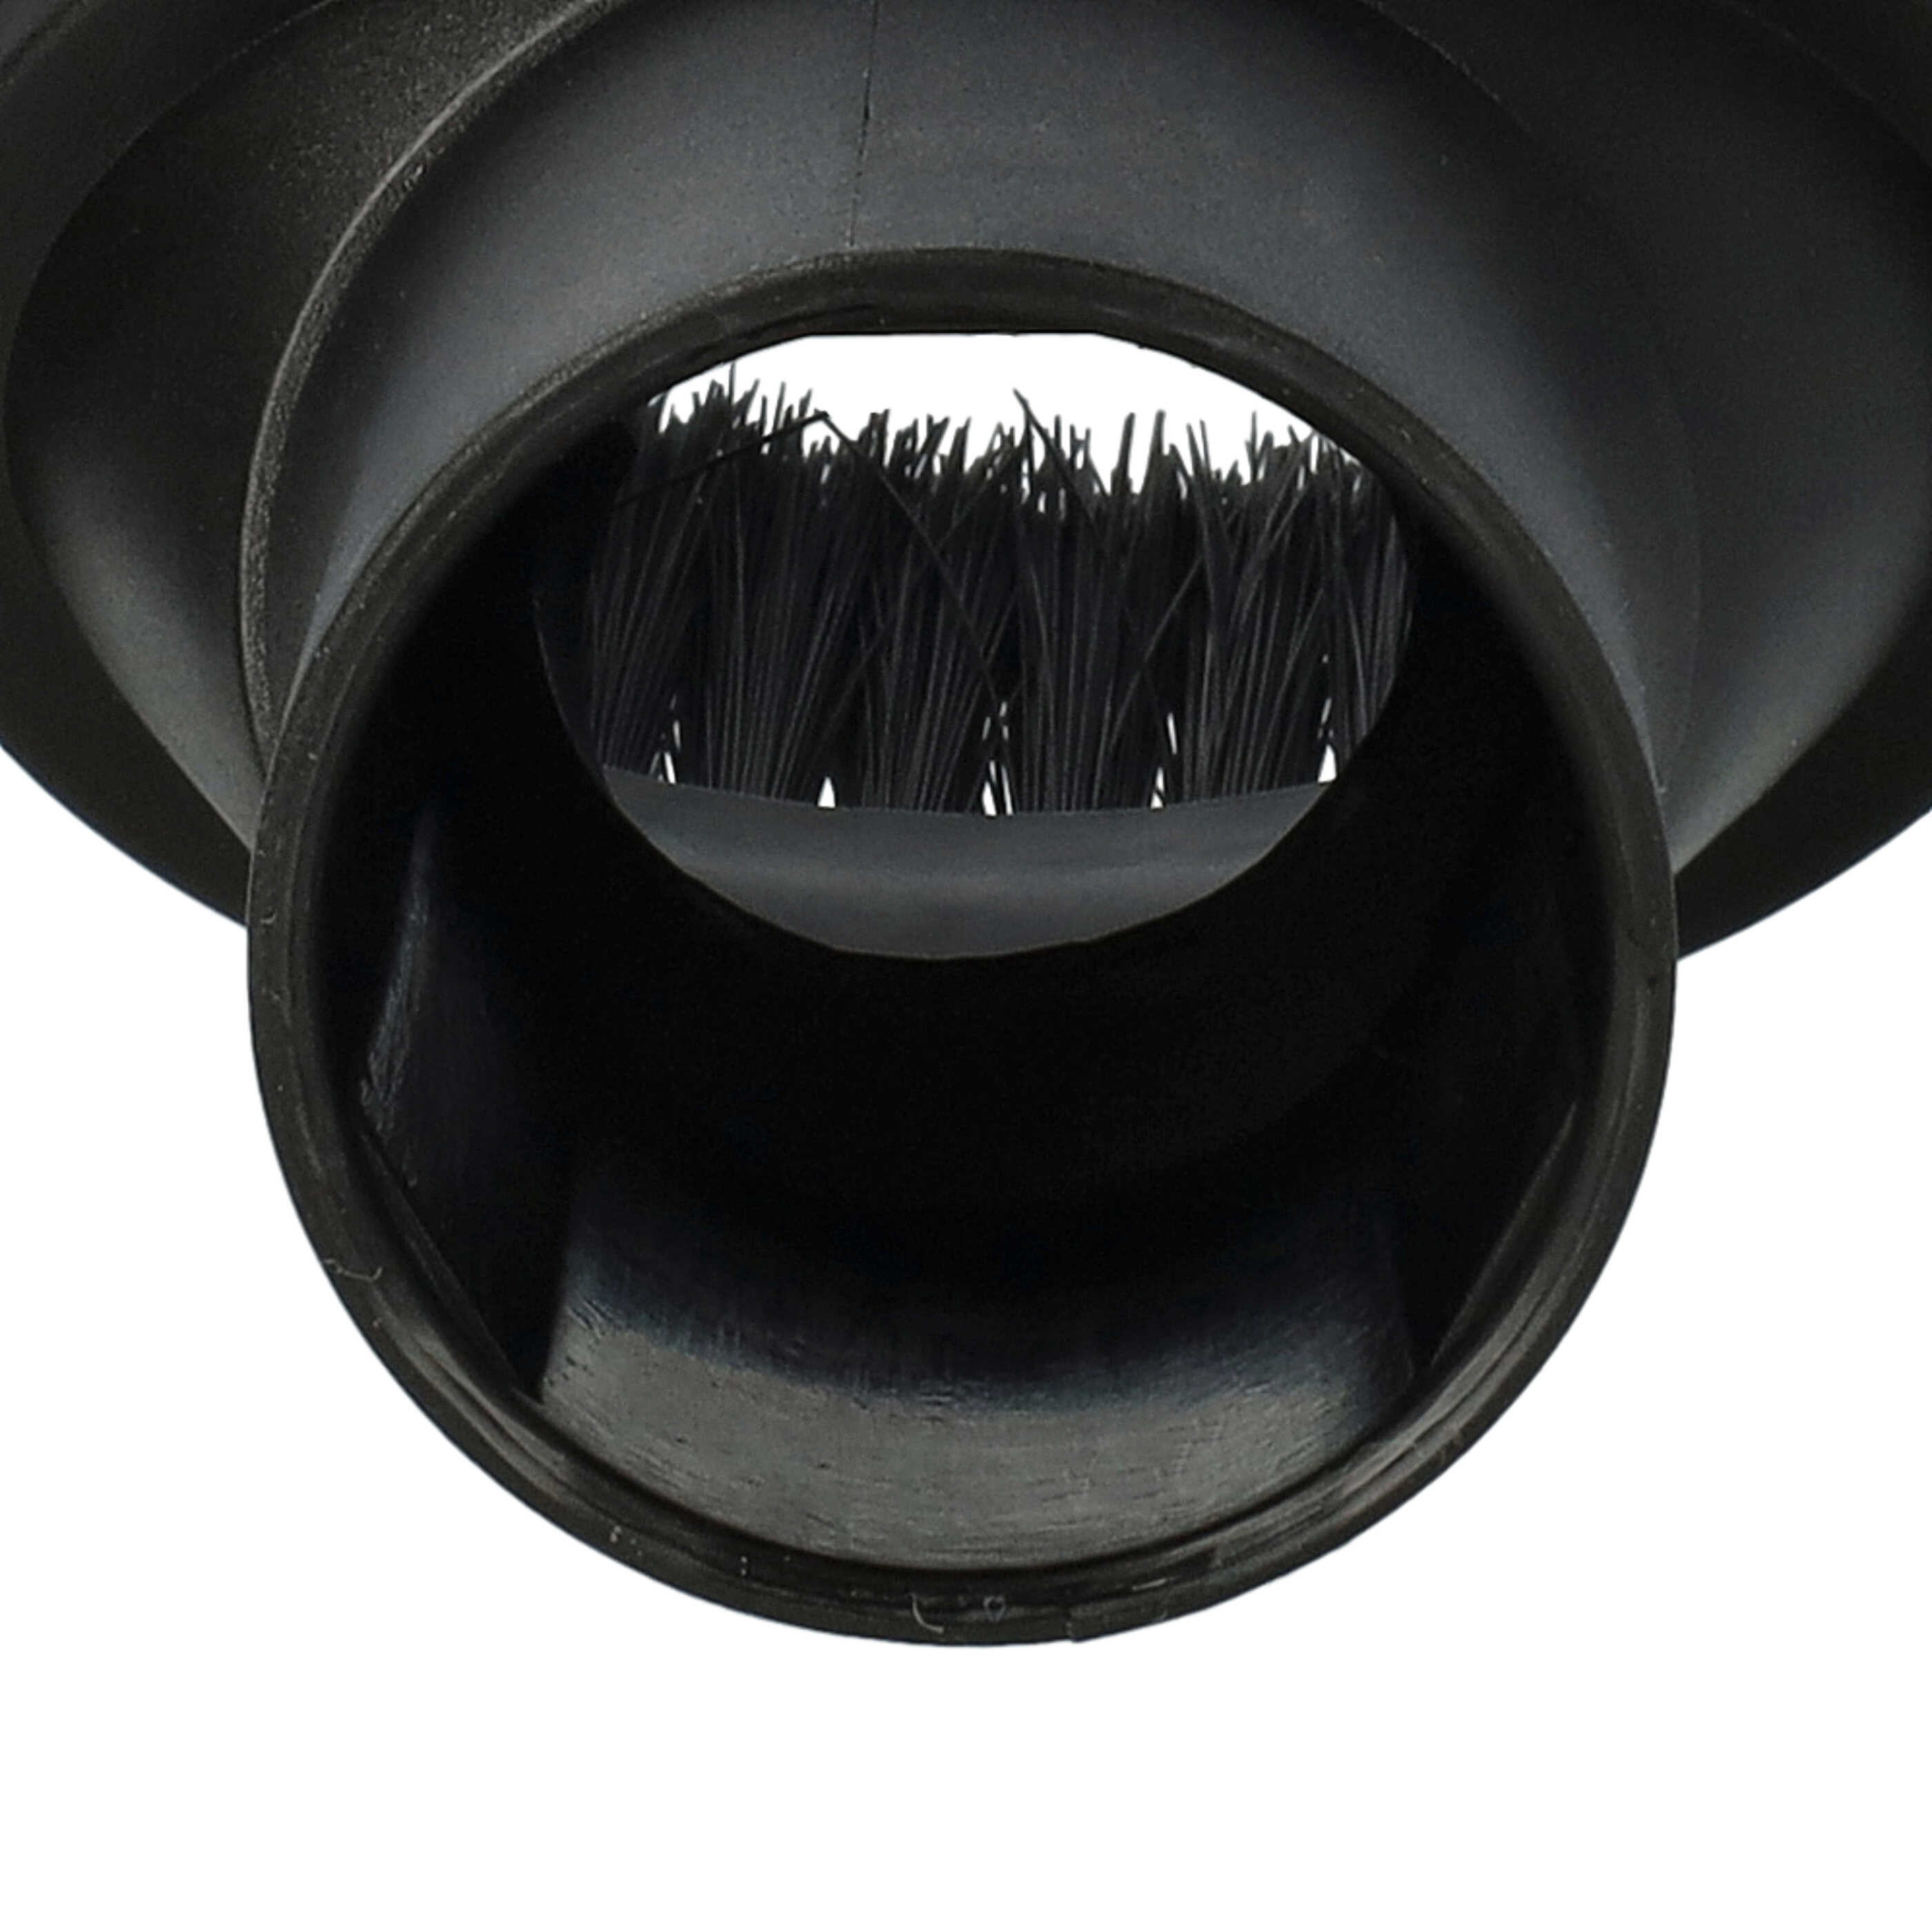  Boquilla cepillo 35 mm conexión para aspiradora - Boquilla de muebles con cerdas